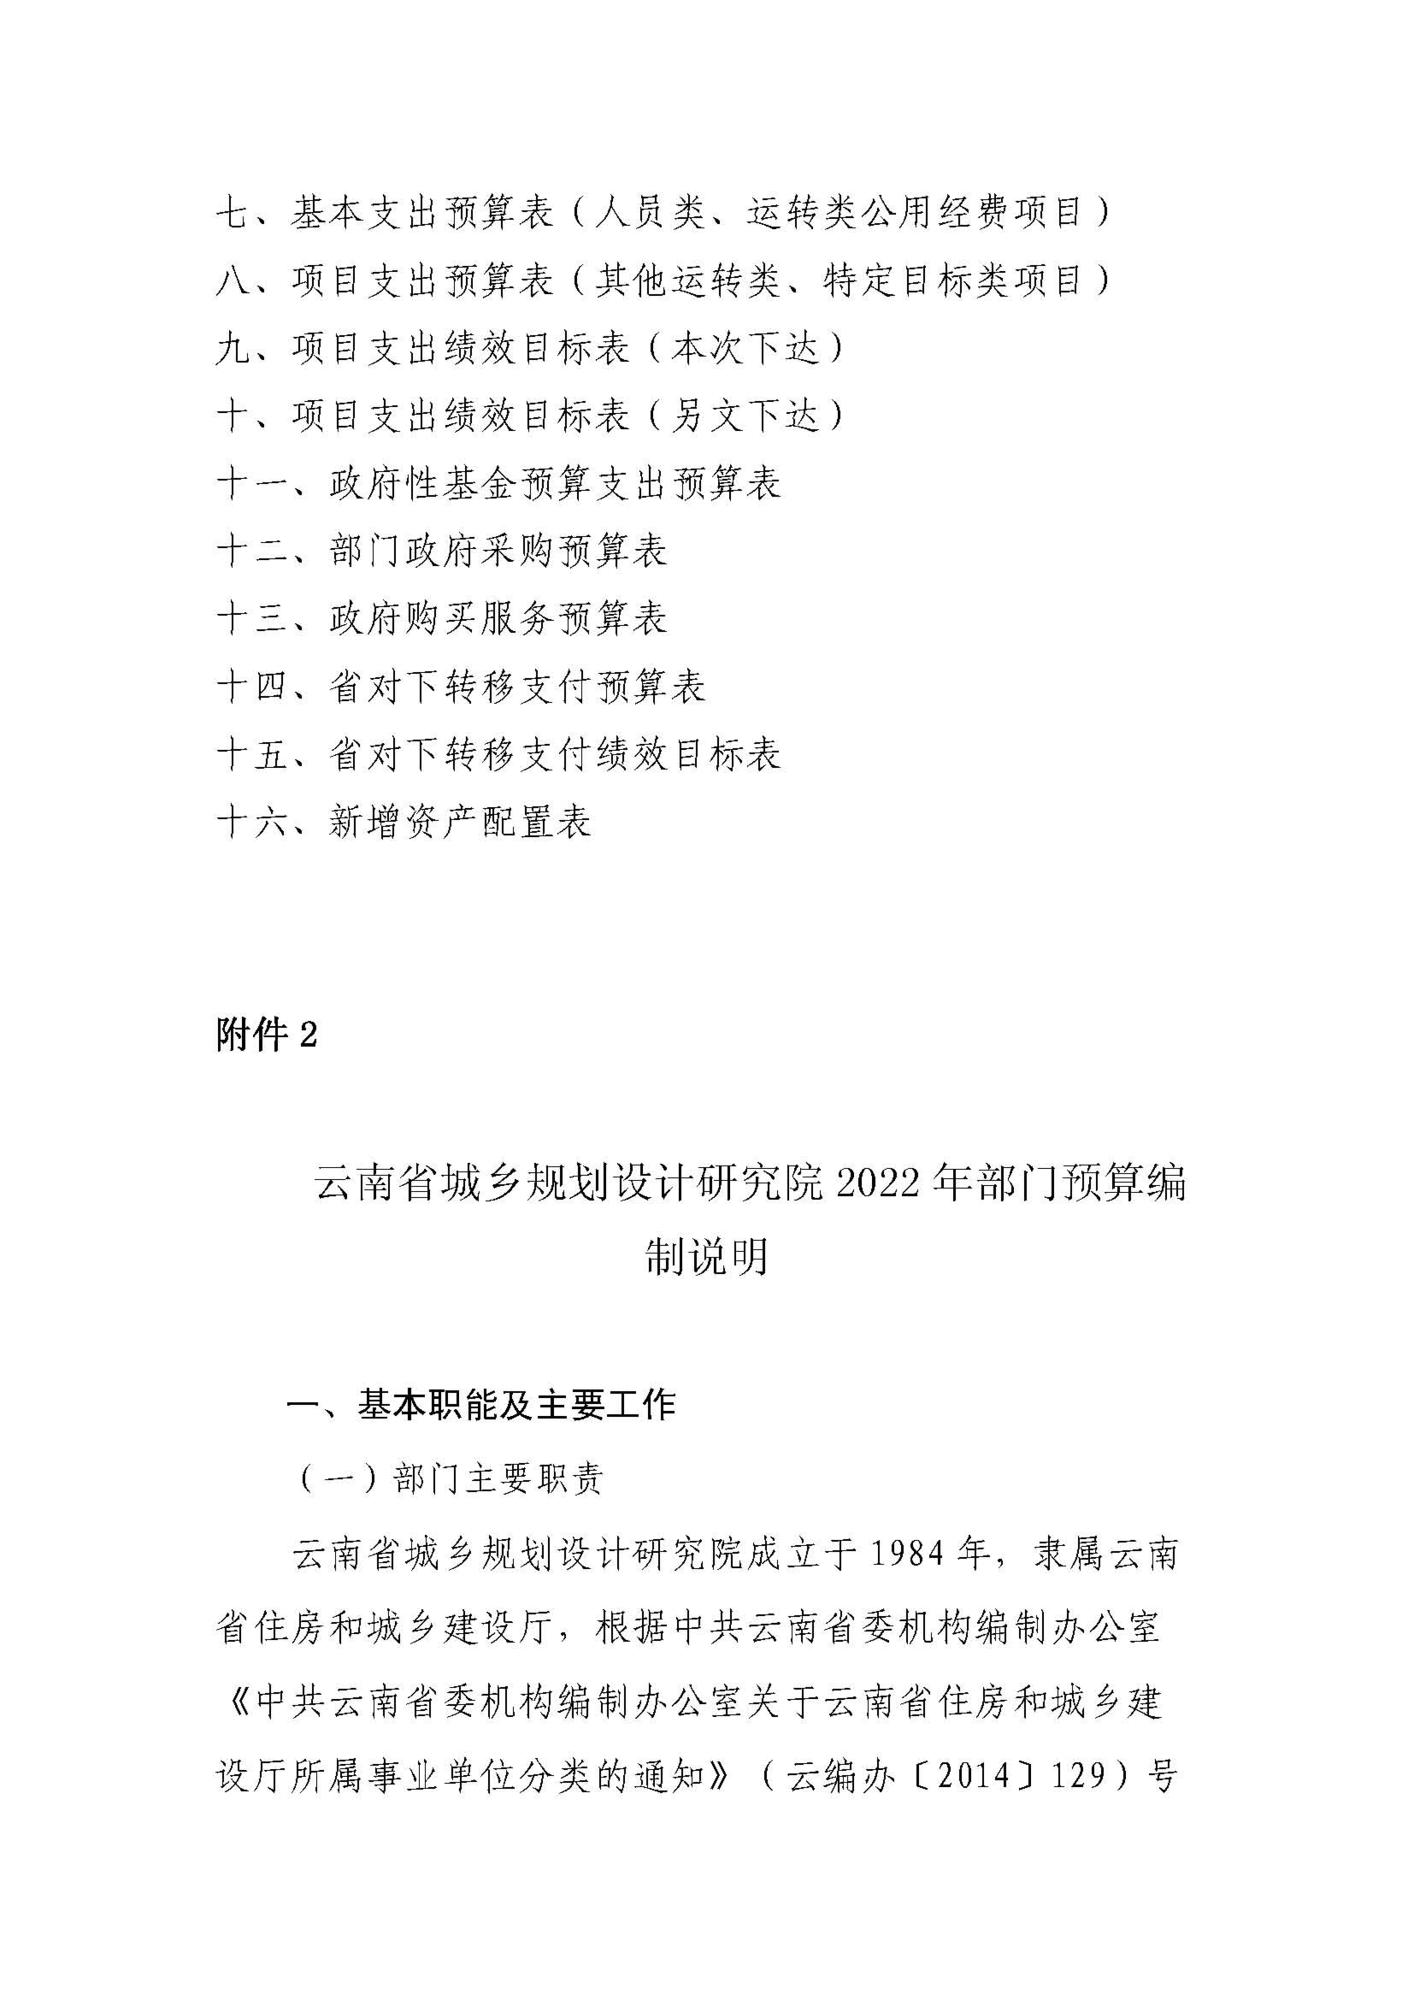 云南省城乡规划设计研究院（预算公开说明）_页面_02.jpg